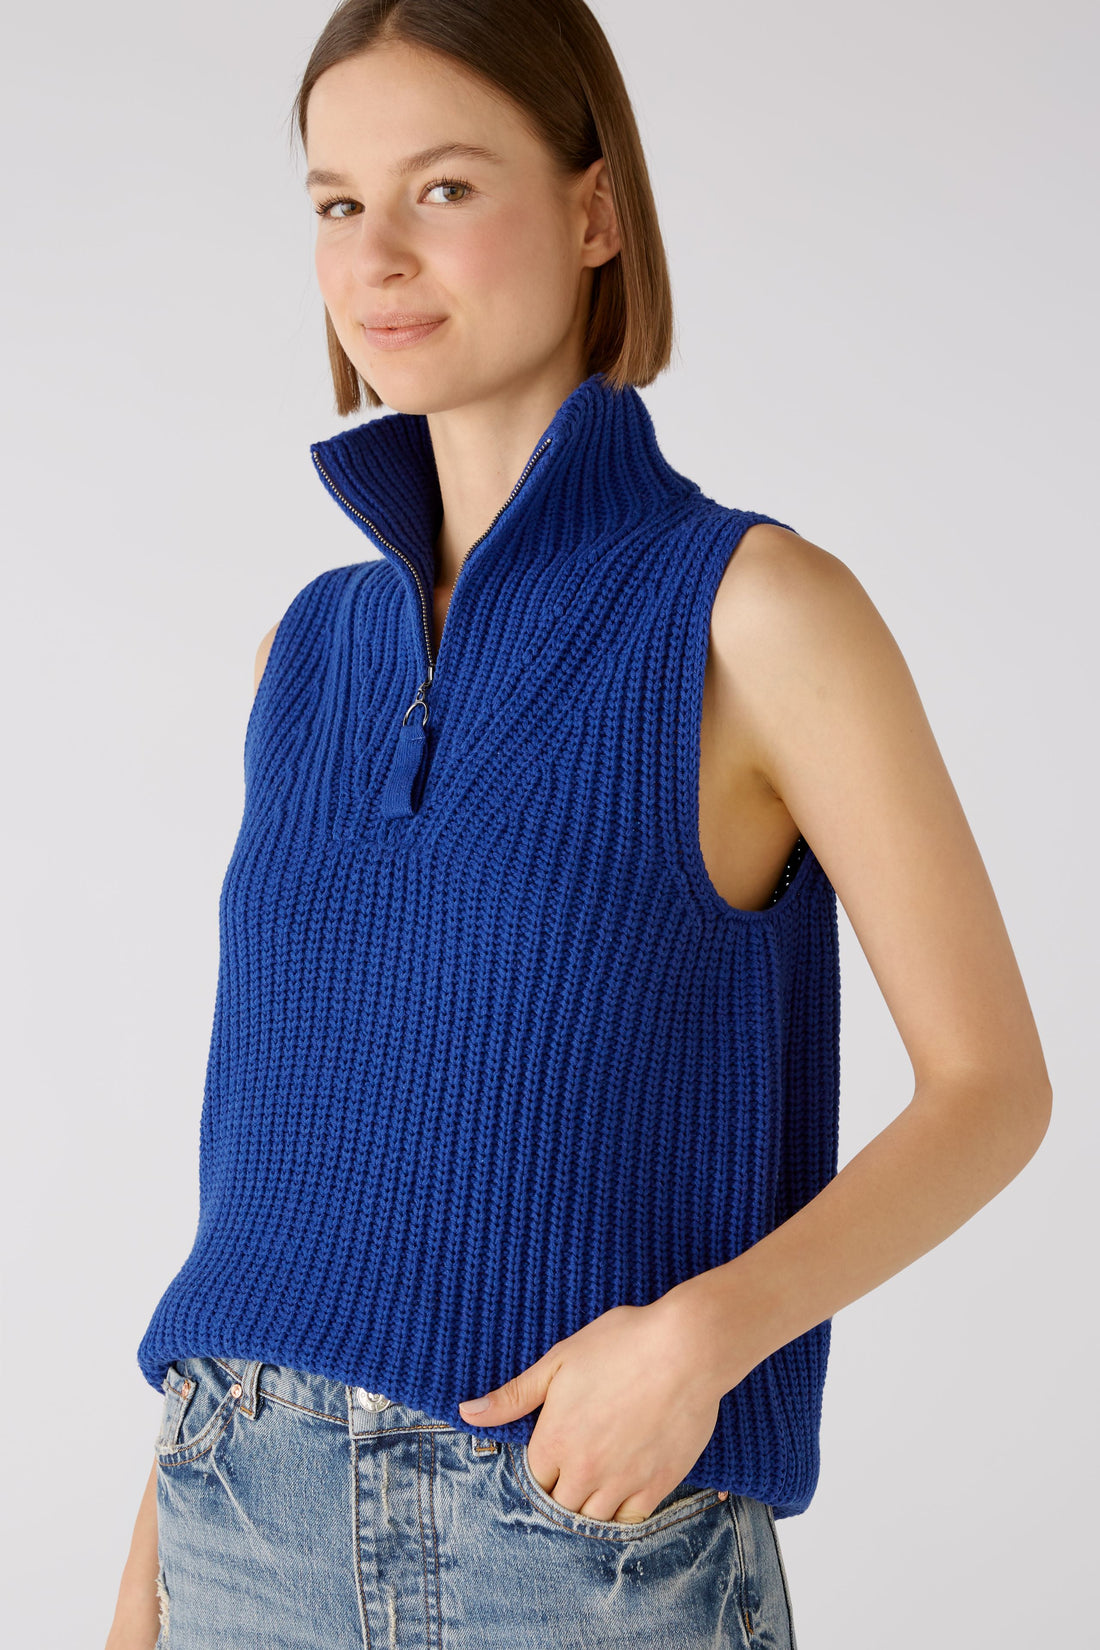 Oui -Cobalt Blue Knit Vest